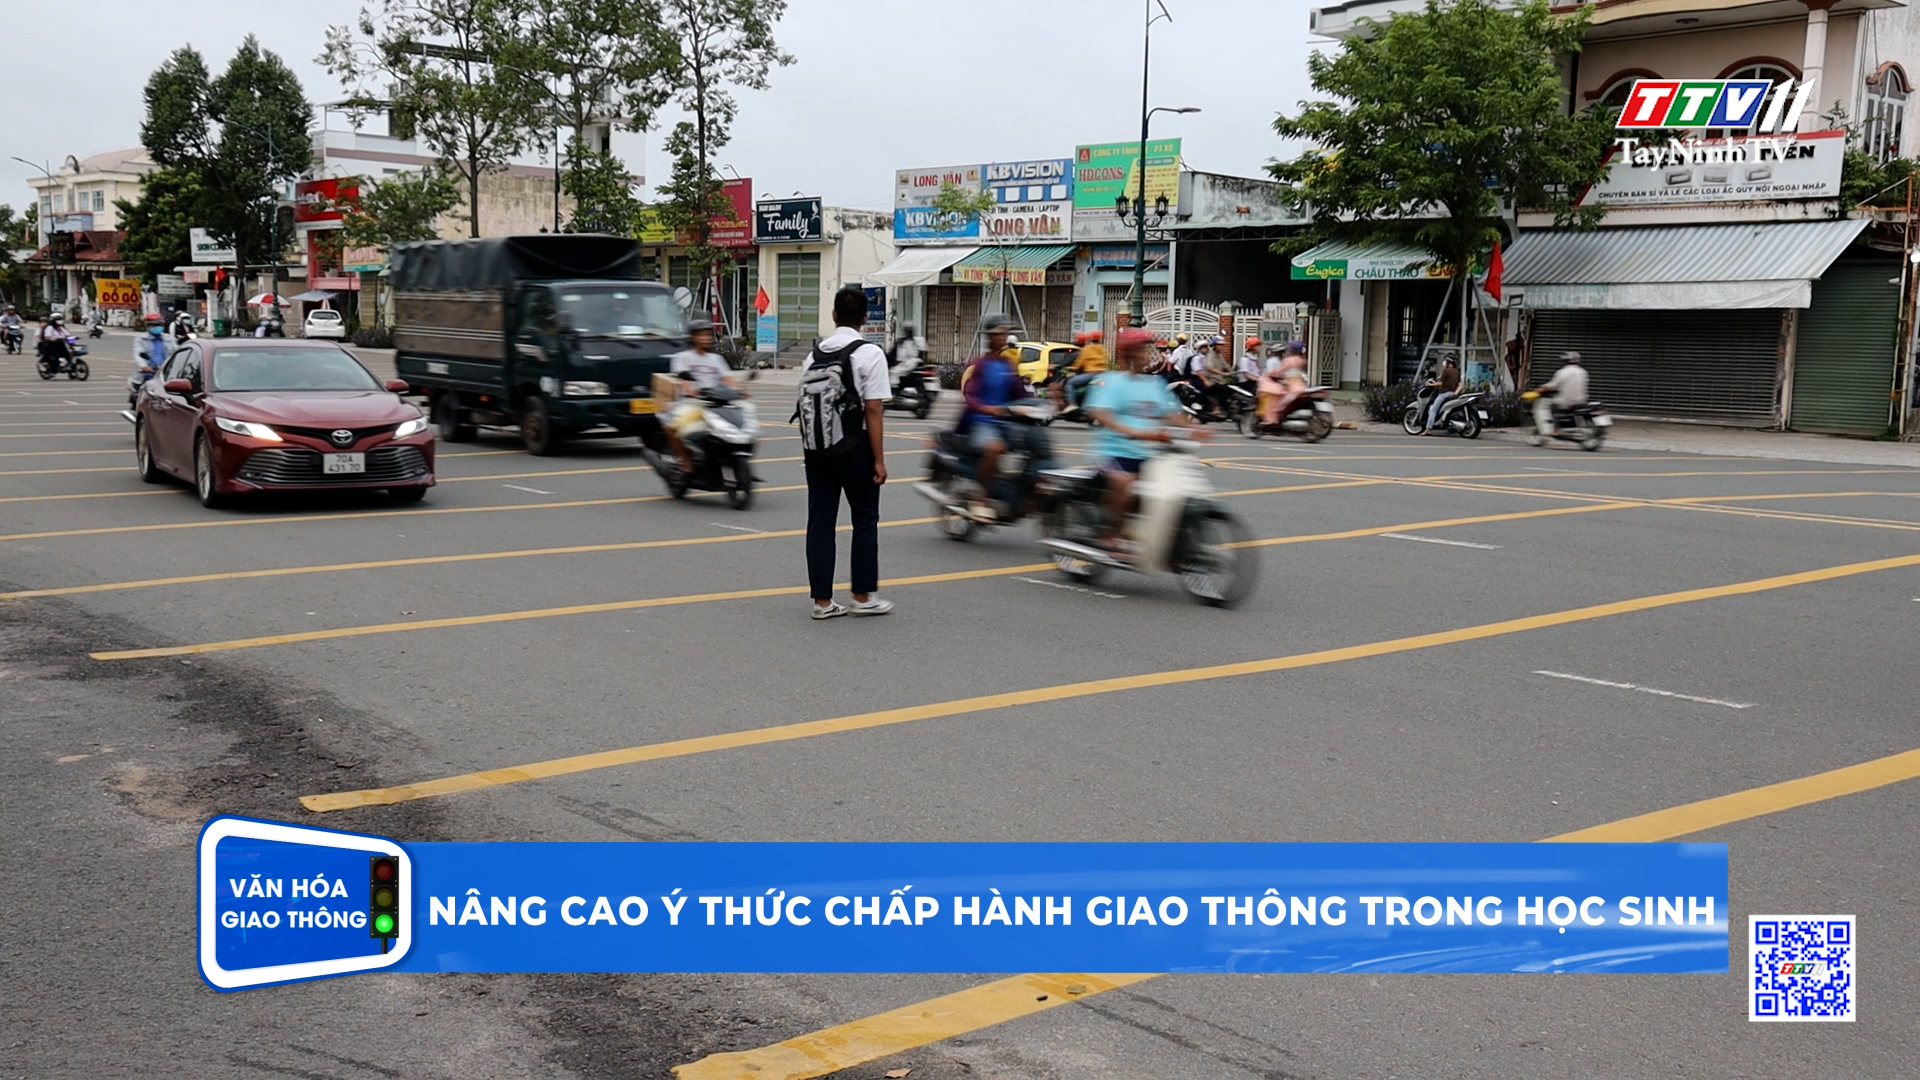 Nâng cao ý thức chấp hành giao thông trong học sinh | Văn hóa giao thông | TayNinhTV